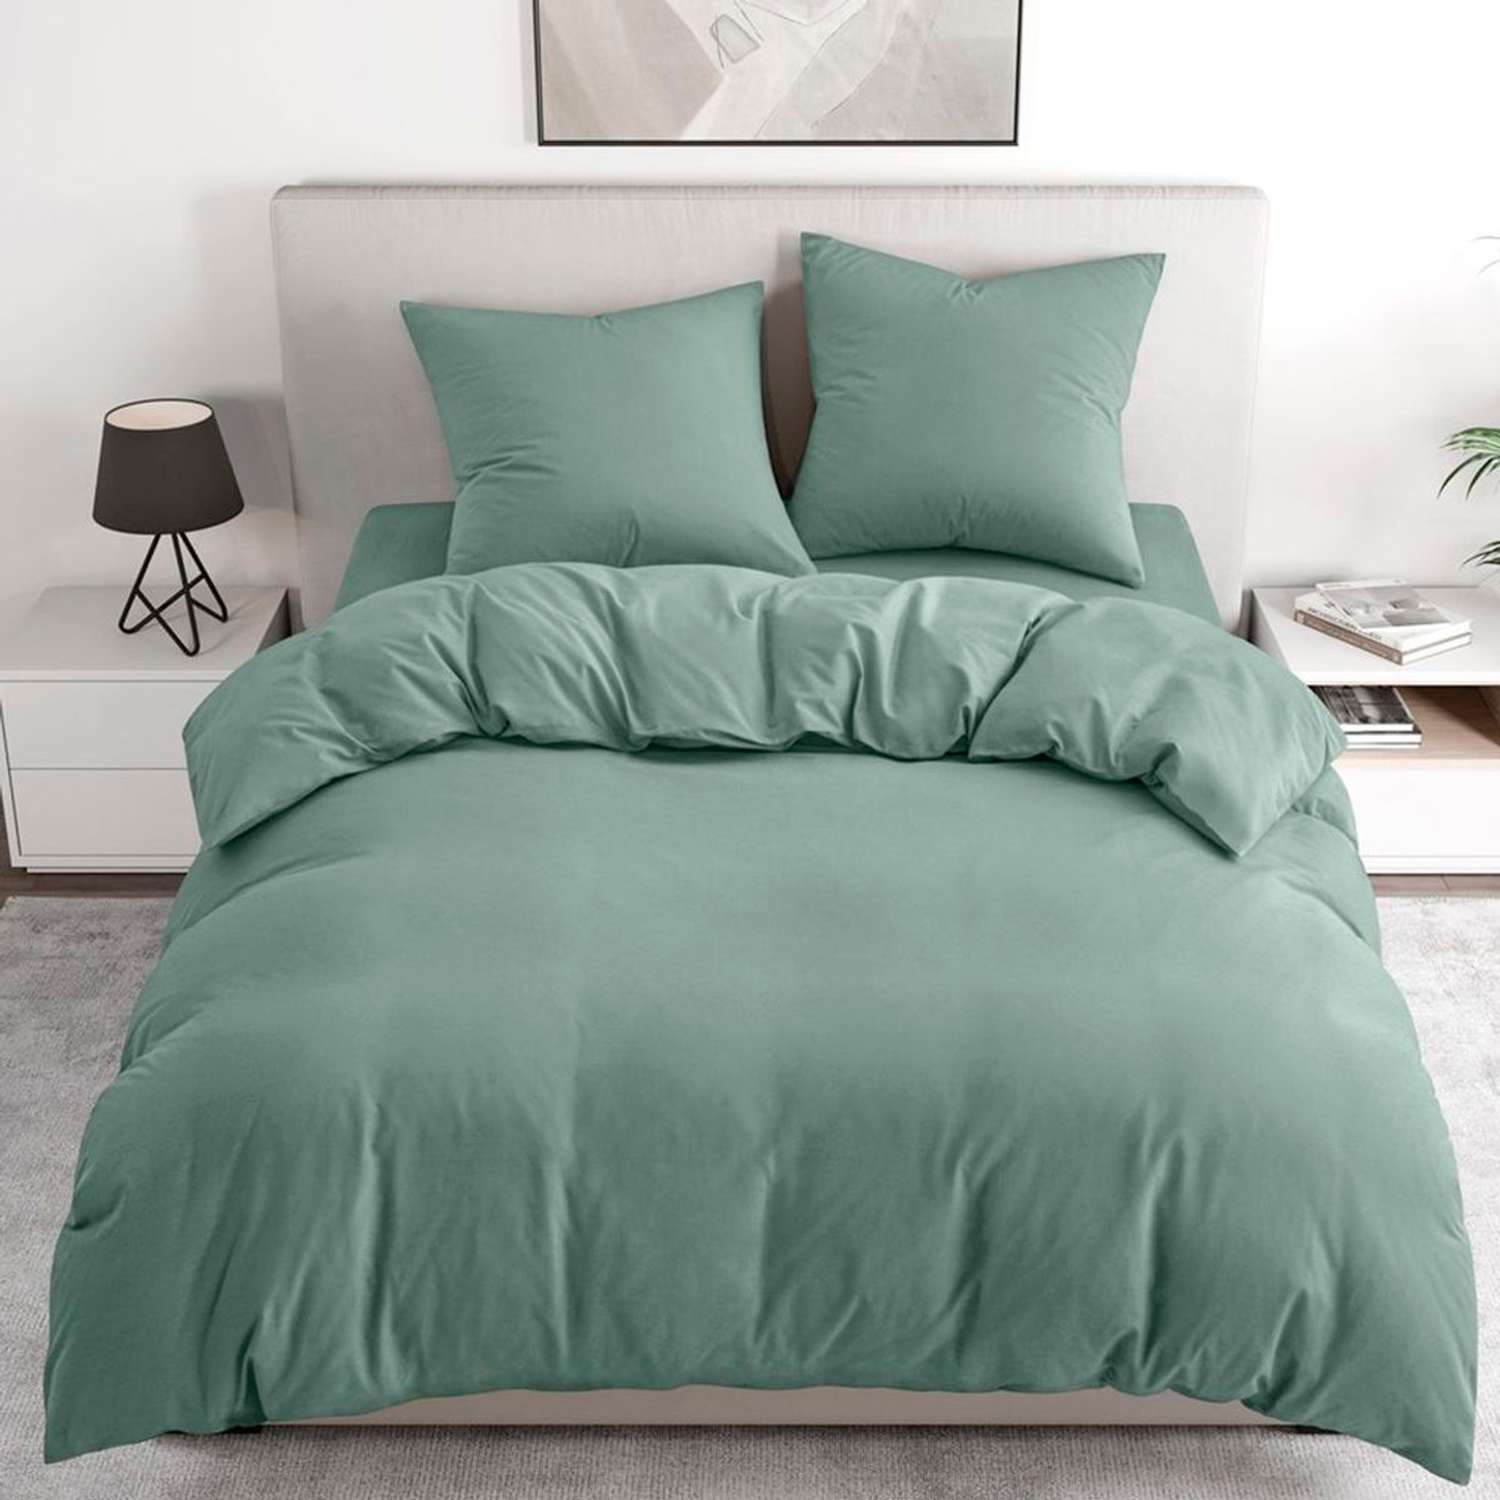 Комплект постельного белья BRAVO 2-спальный макси наволочки 70х70 рис.4549-1 зеленый - фото 1